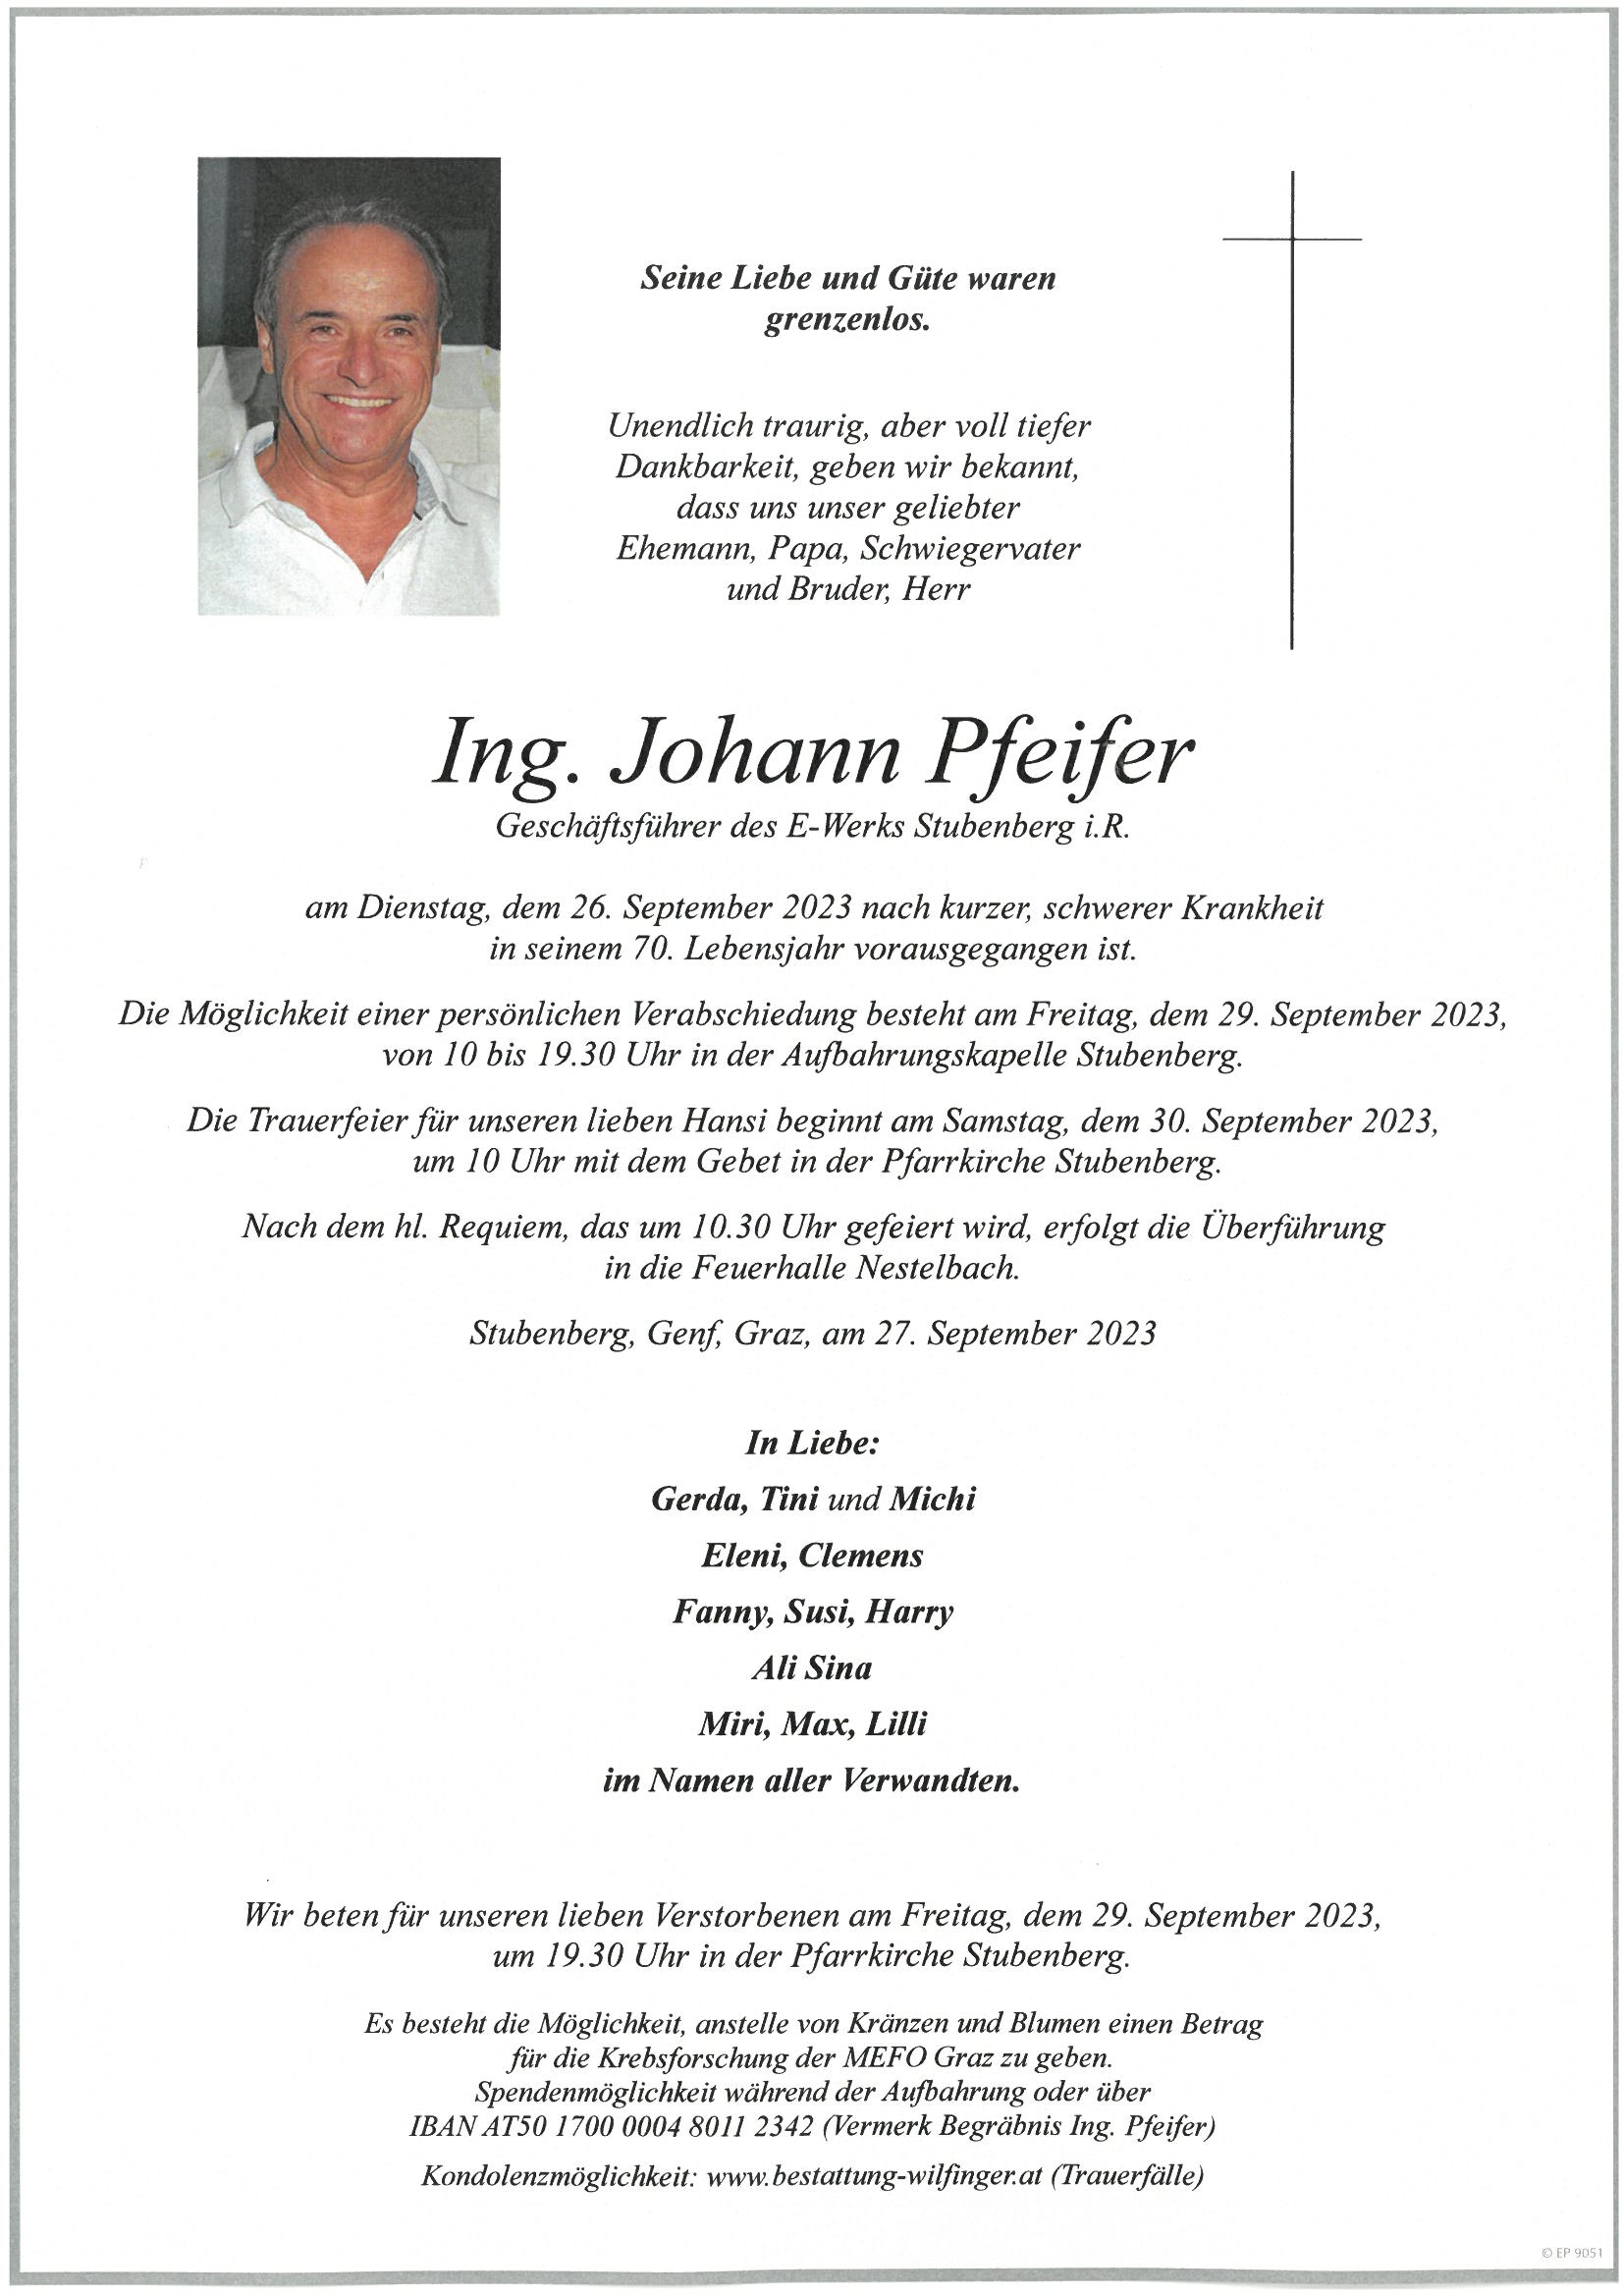 Ing. Johann Pfeifer, Stubenberg